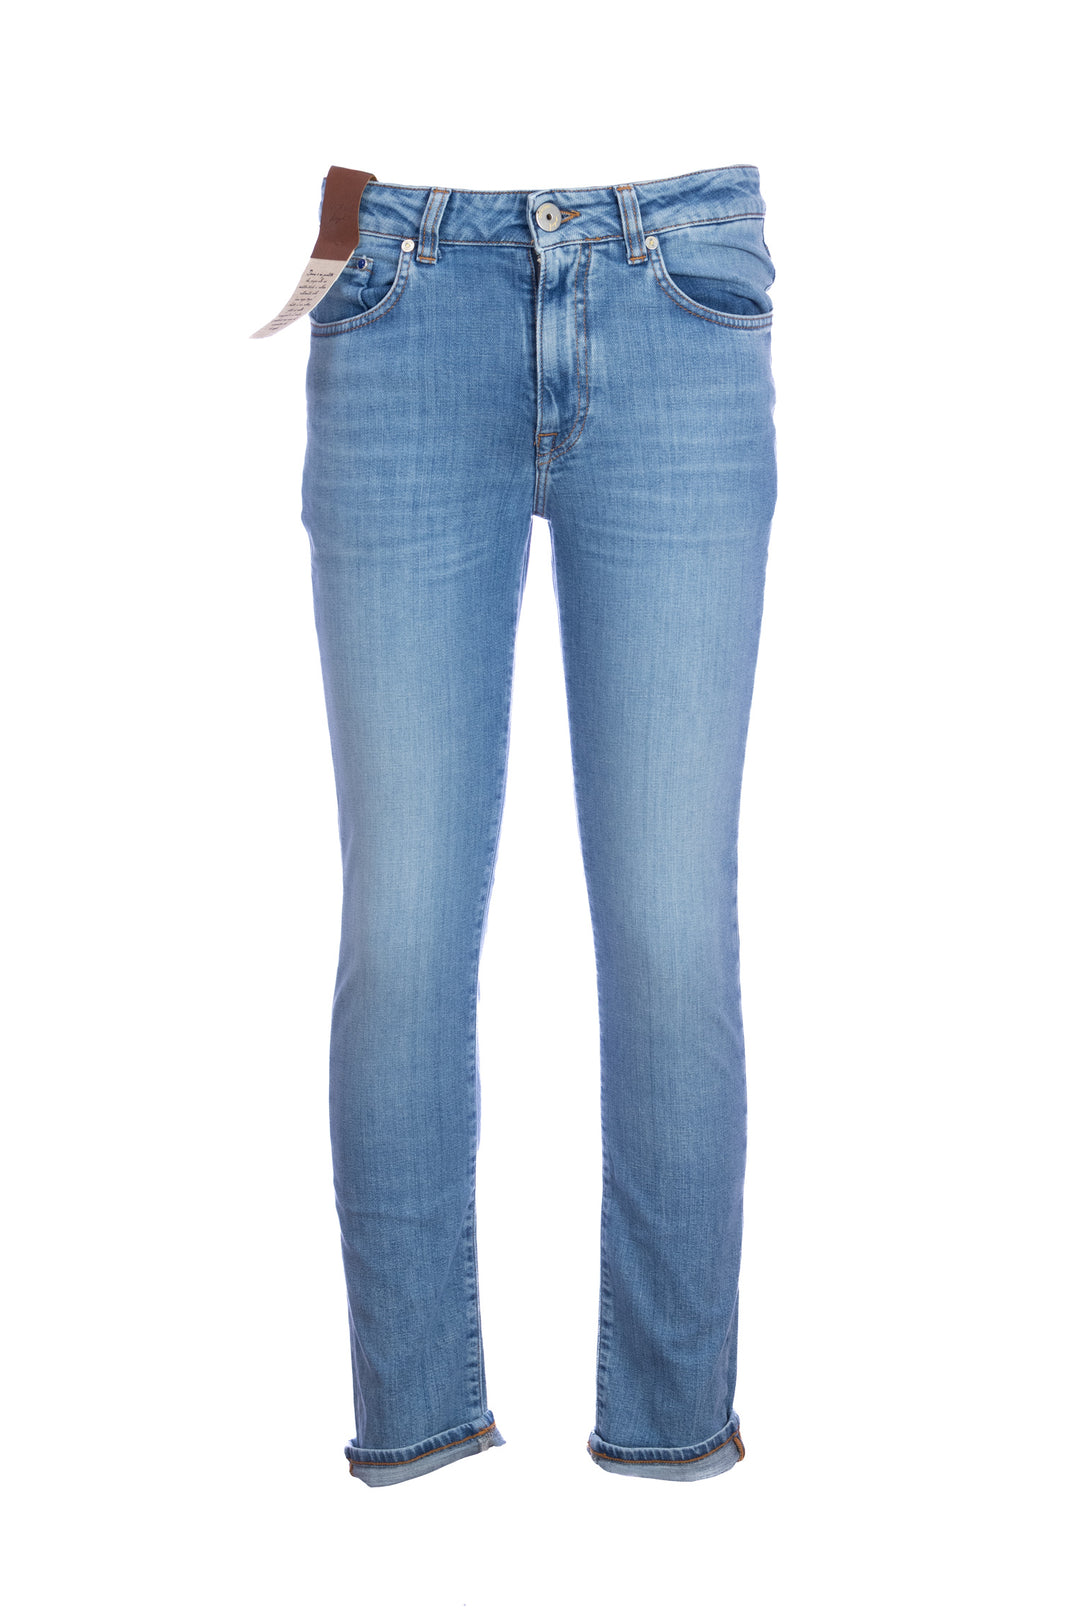 DEVORE Jeans 5 tasche in cotone stretch lavaggio chiaro - Mancinelli 1954